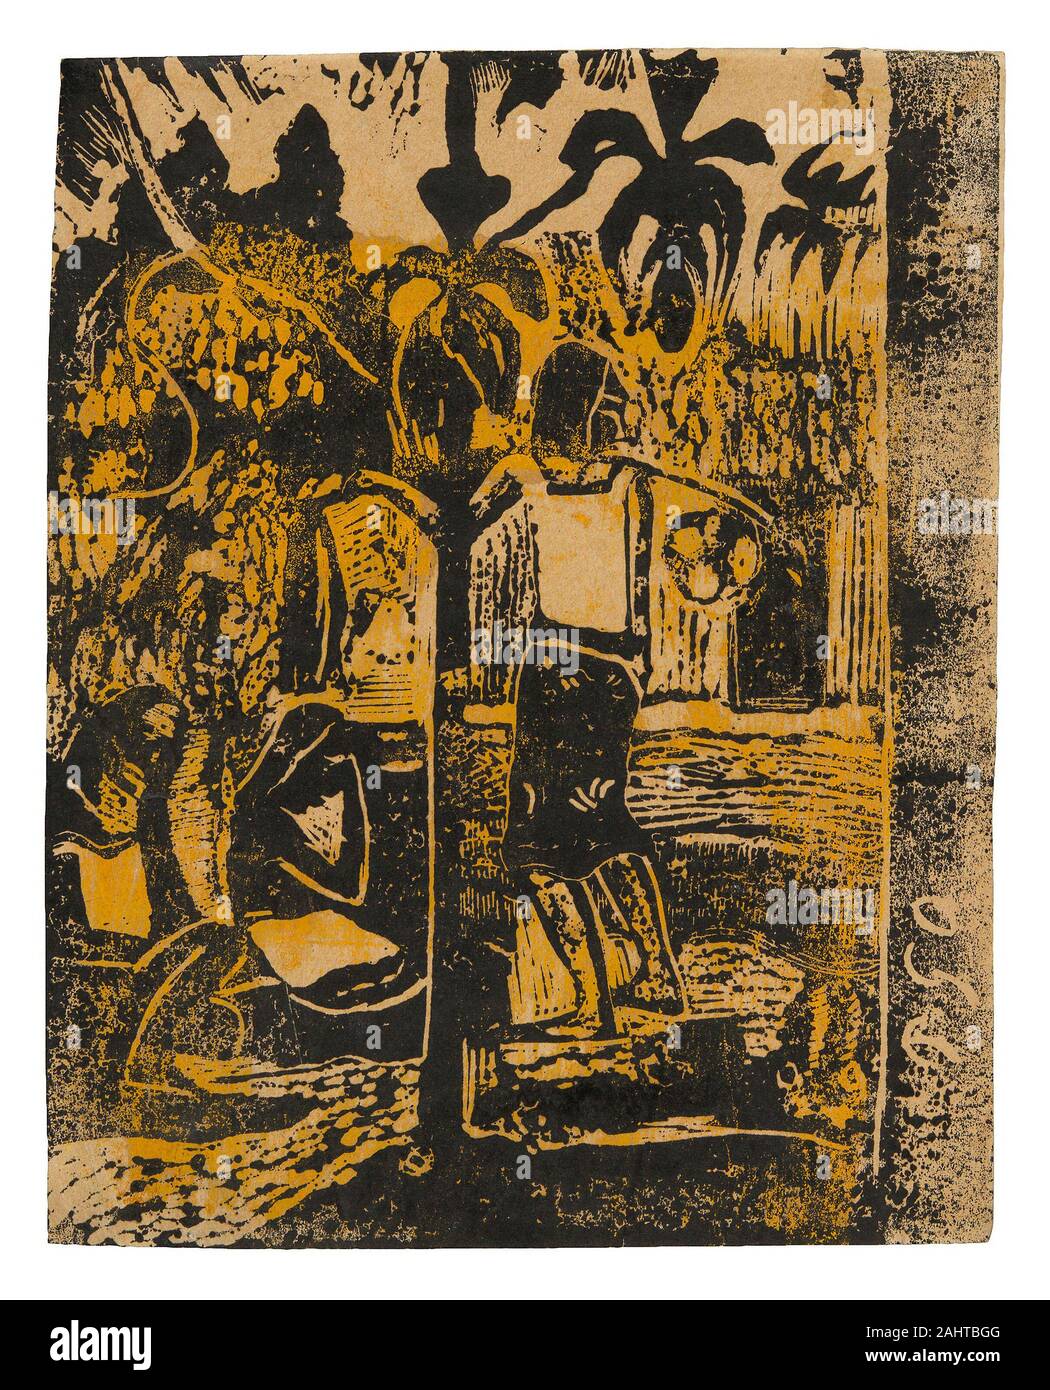 Paul Gauguin. Noa Noa (Duft). 1894 - 1895. Frankreich. Holz-Block schwarz drucken Tinte, über Lösungsmittel verdünnt und selektiv angewendet Ockergelb Tinte, auf Creme webte Papier Stockfoto